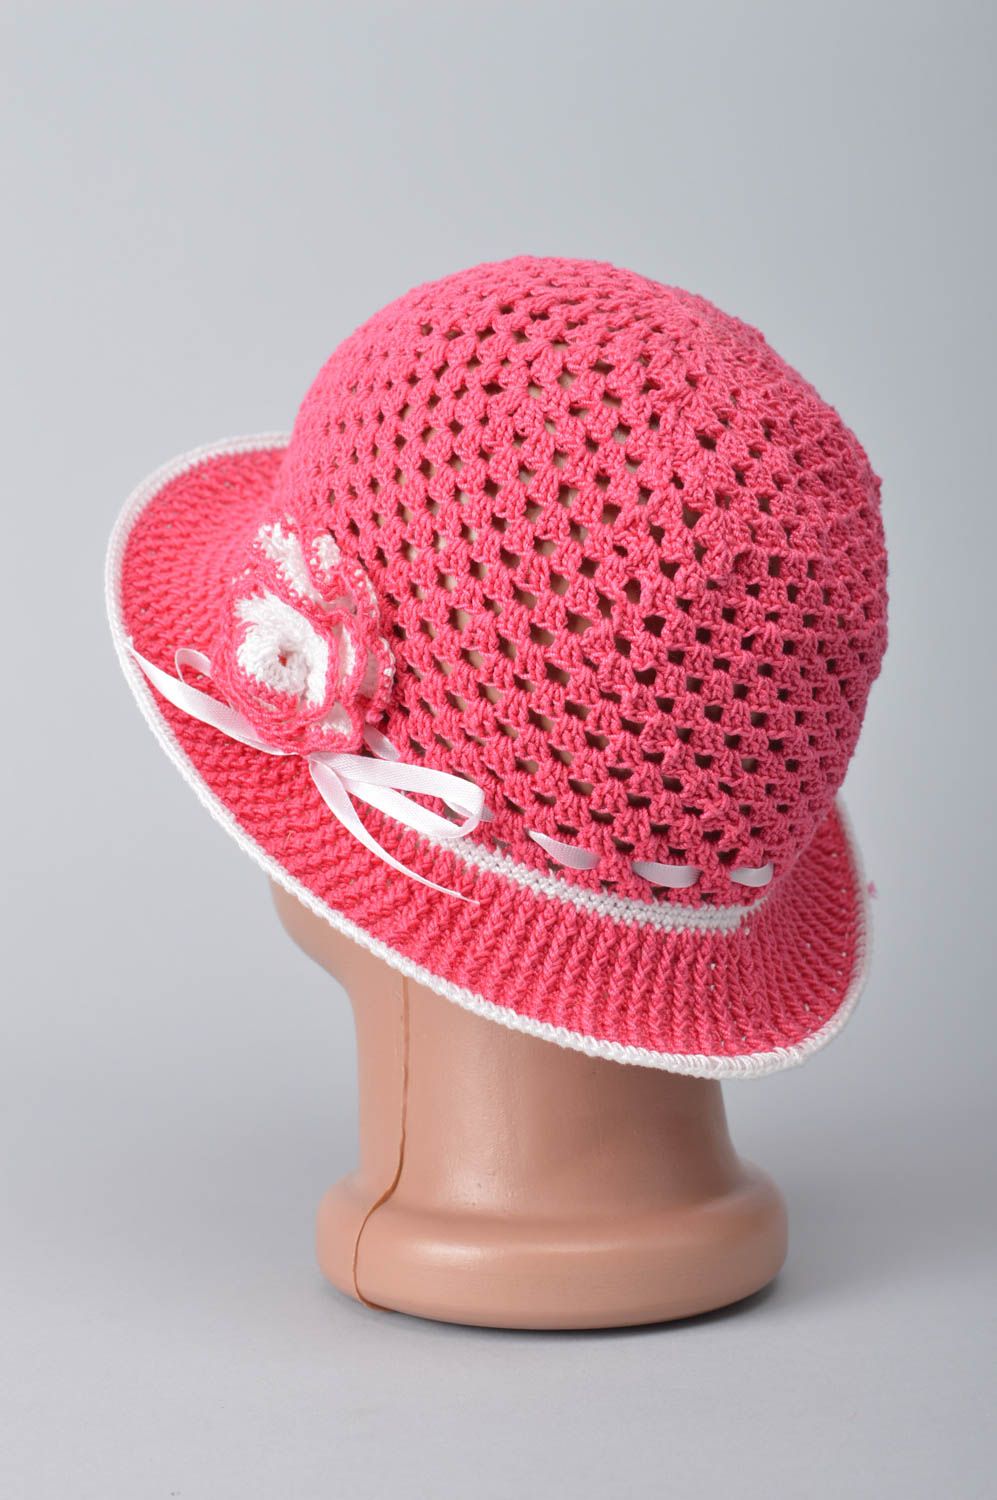 Детская шляпа ручной работы вязаная шляпа головной убор для ребенка розовая фото 10